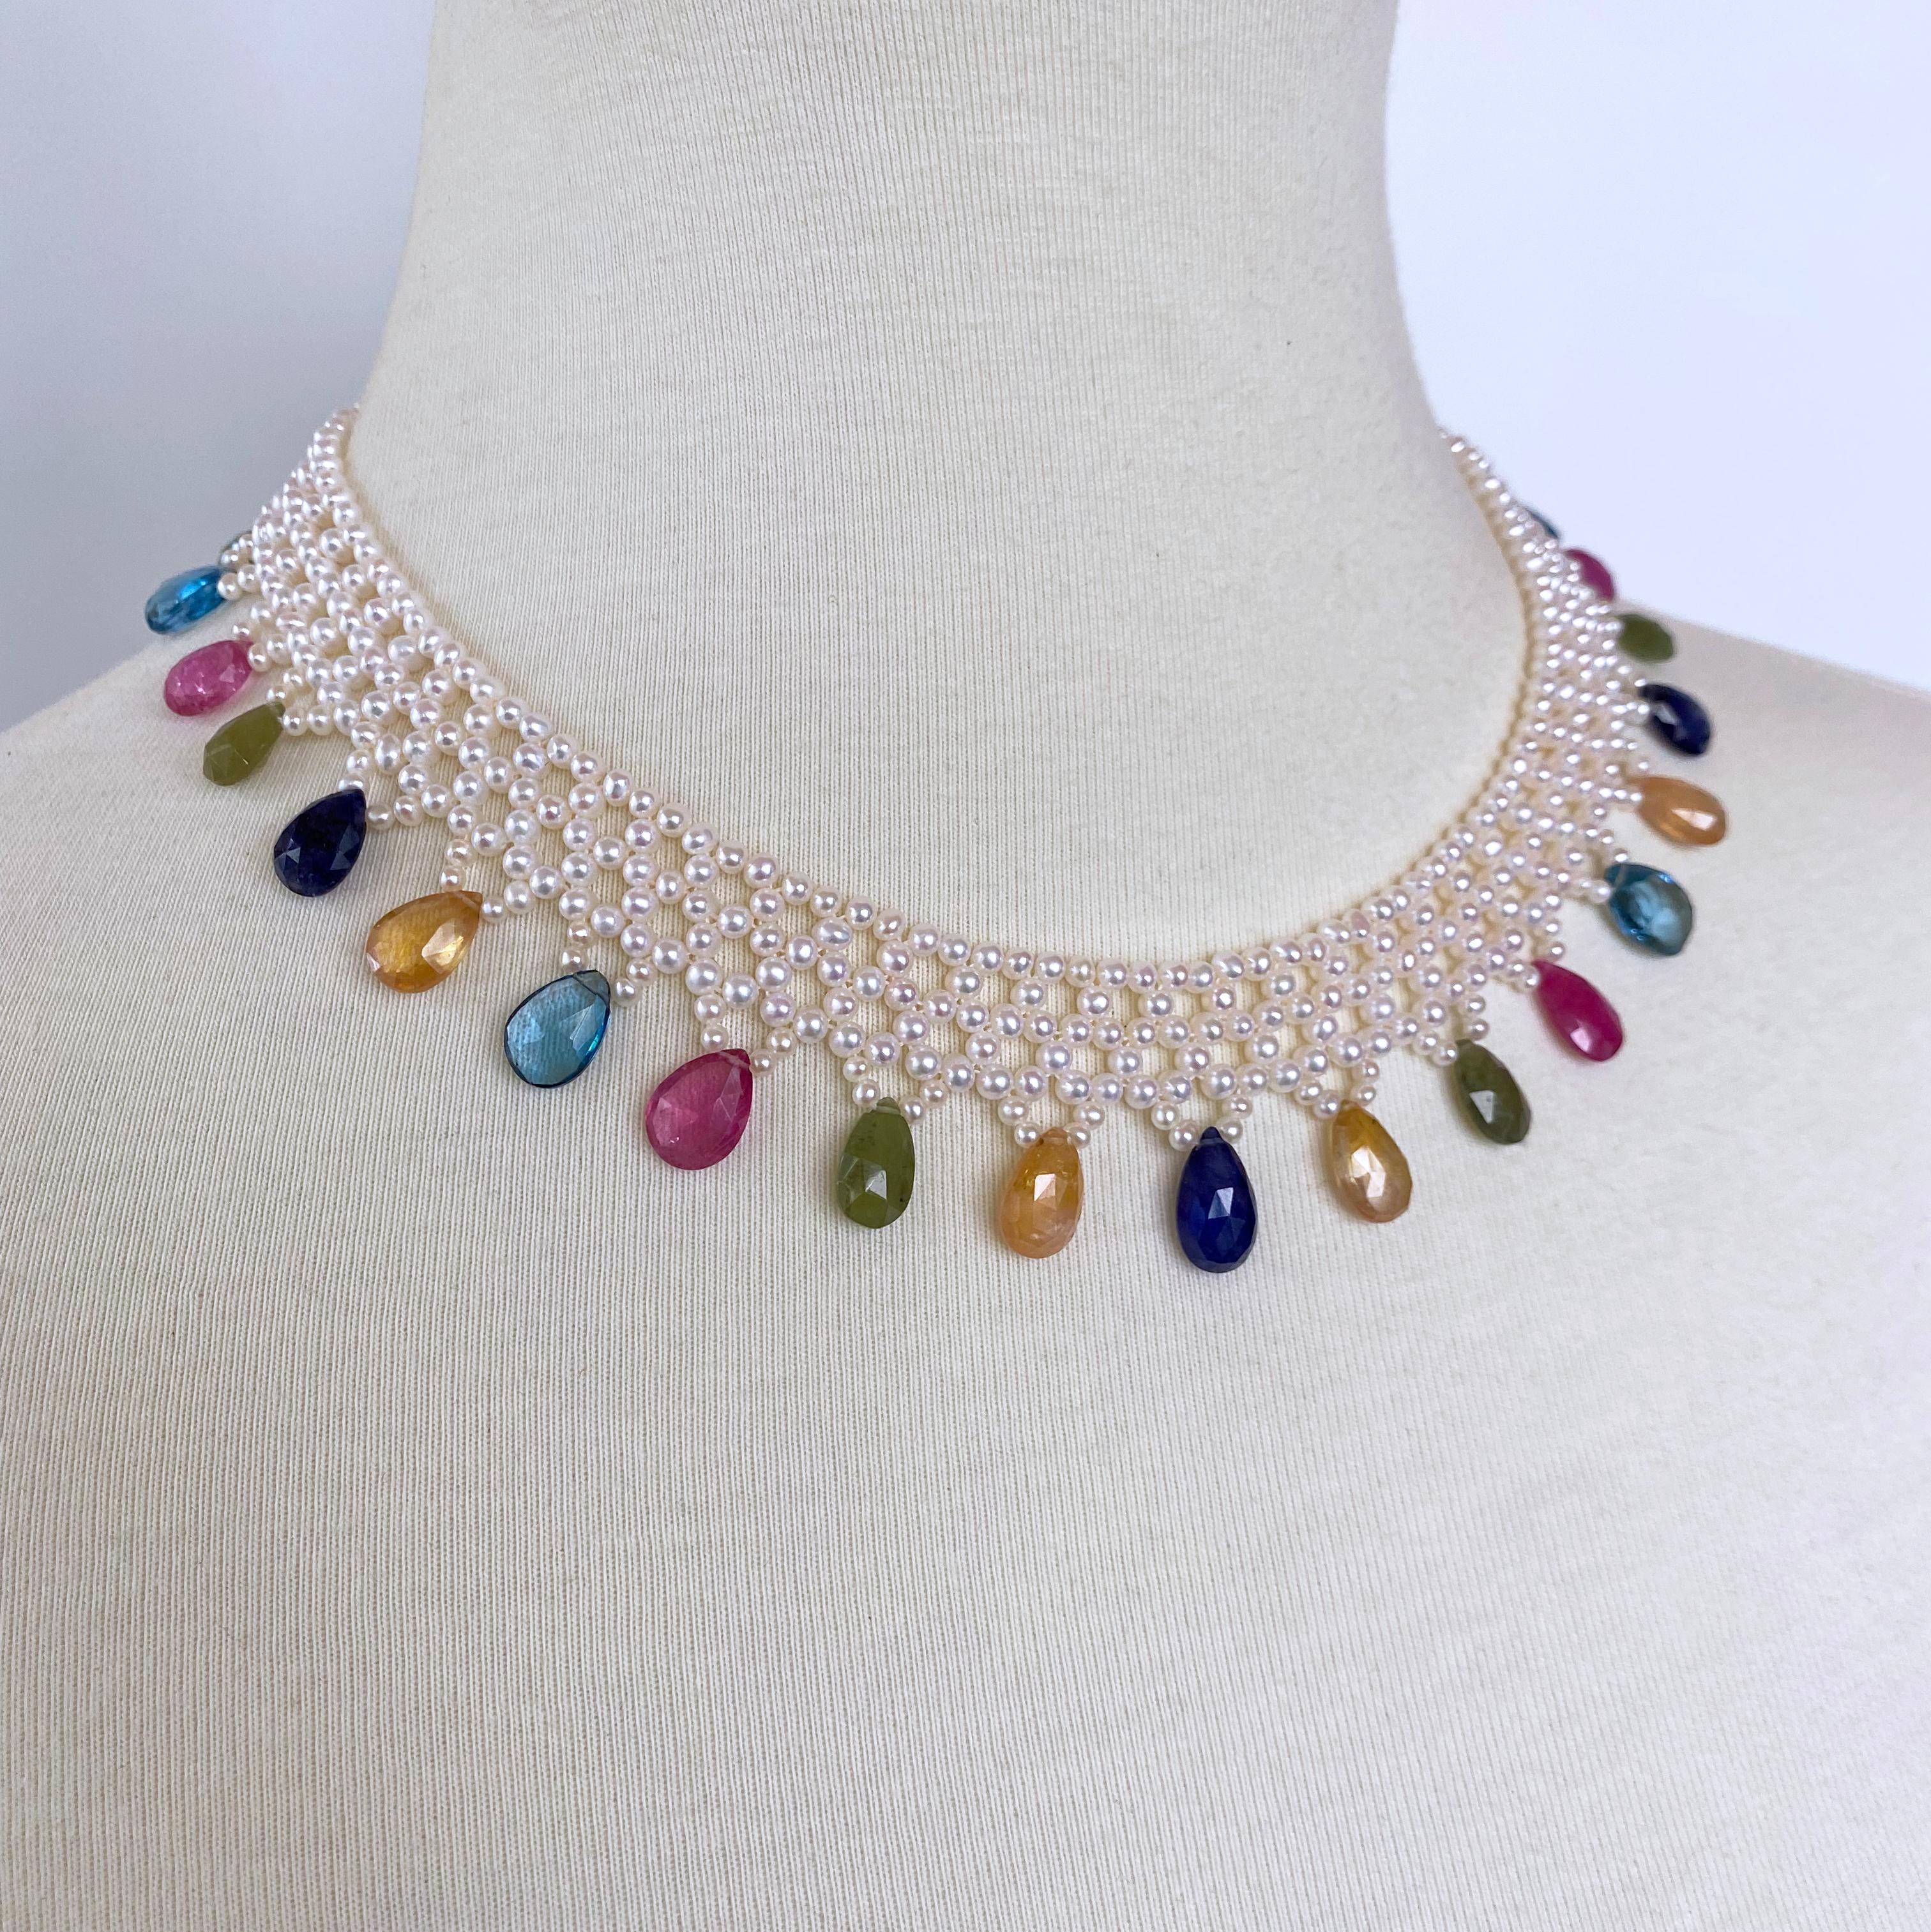 Klassische, handgeflochtene Halskette von Marina J. Dieses Stück besteht aus Zuchtperlen mit strahlend weißem Glanz, die kunstvoll zu einem feinen, spitzenähnlichen Muster verwoben sind - geschmückt mit abgestuften, mehrfarbigen Halbedelsteinen.